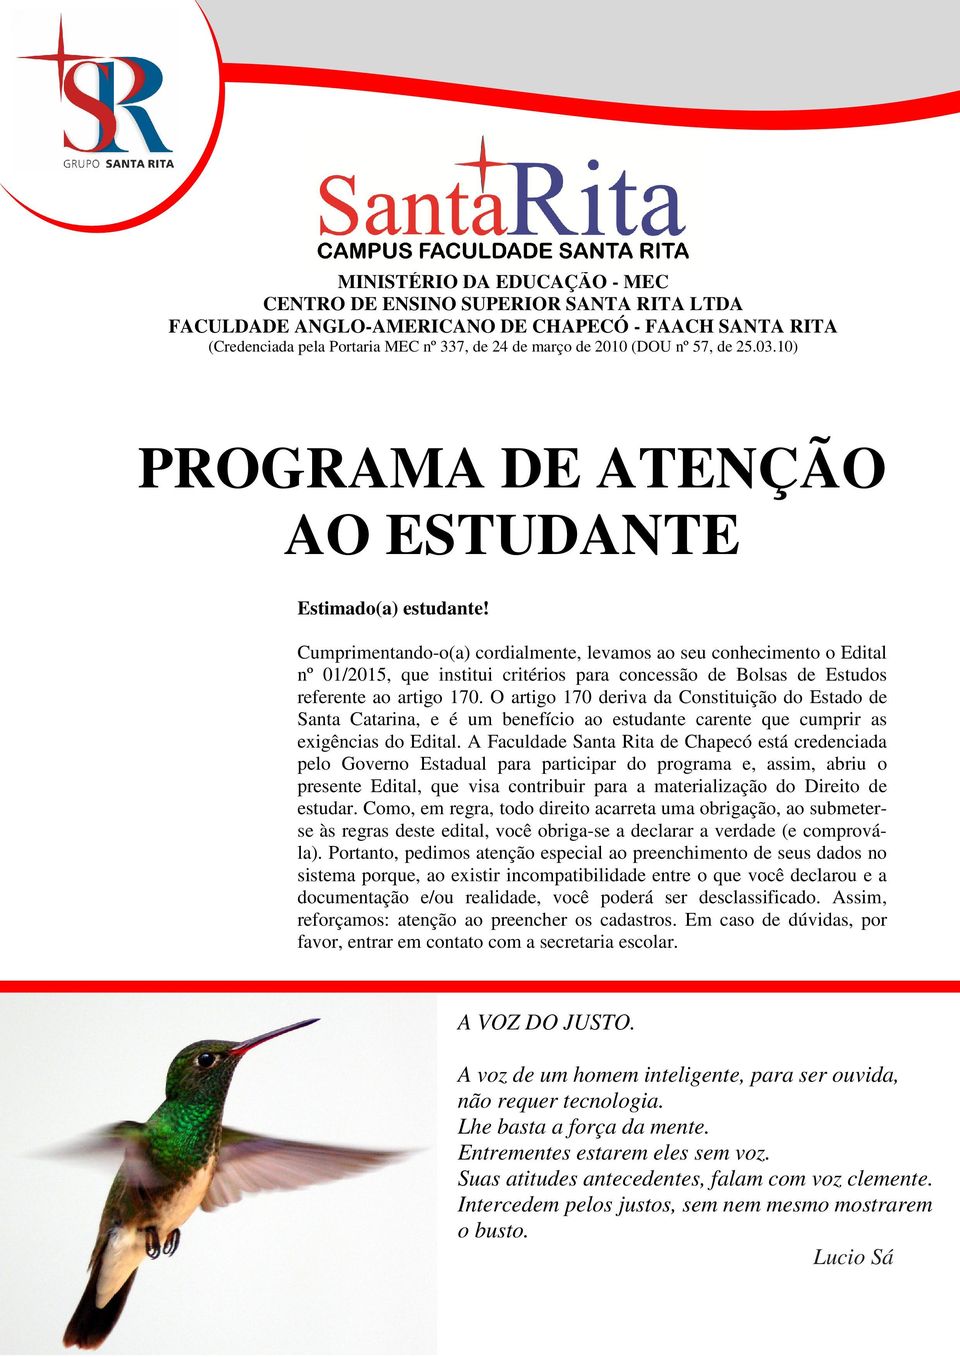 O artigo 170 deriva da Constituição do Estado de Santa Catarina, e é um benefício ao estudante carente que cumprir as exigências do Edital.